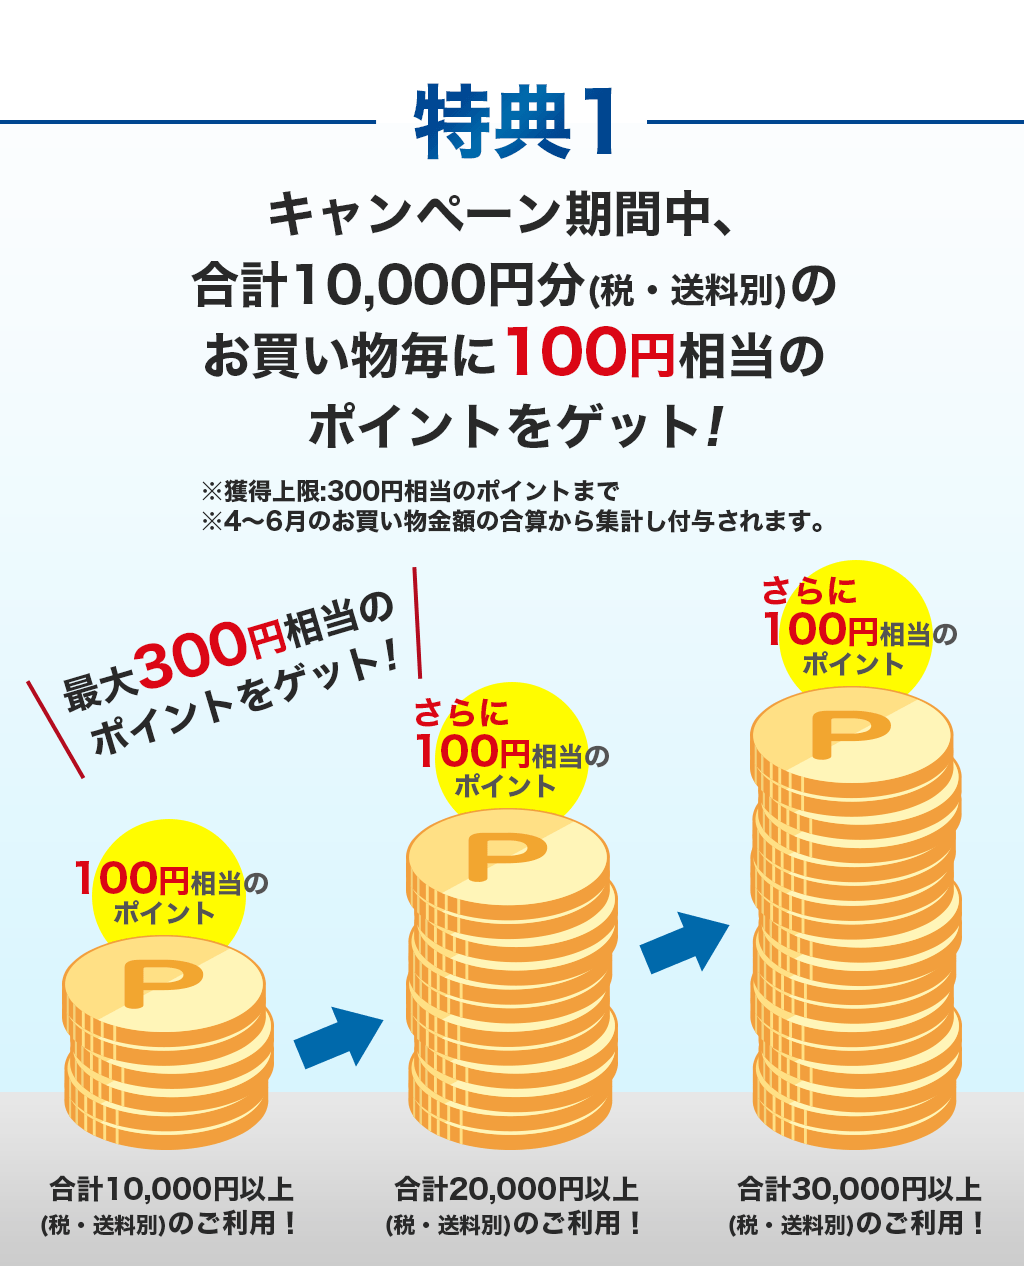 特典1 キャンペーン期間中、合計10,000円分(税・送料別)のお買い物毎に100円相当のポイントをゲット!